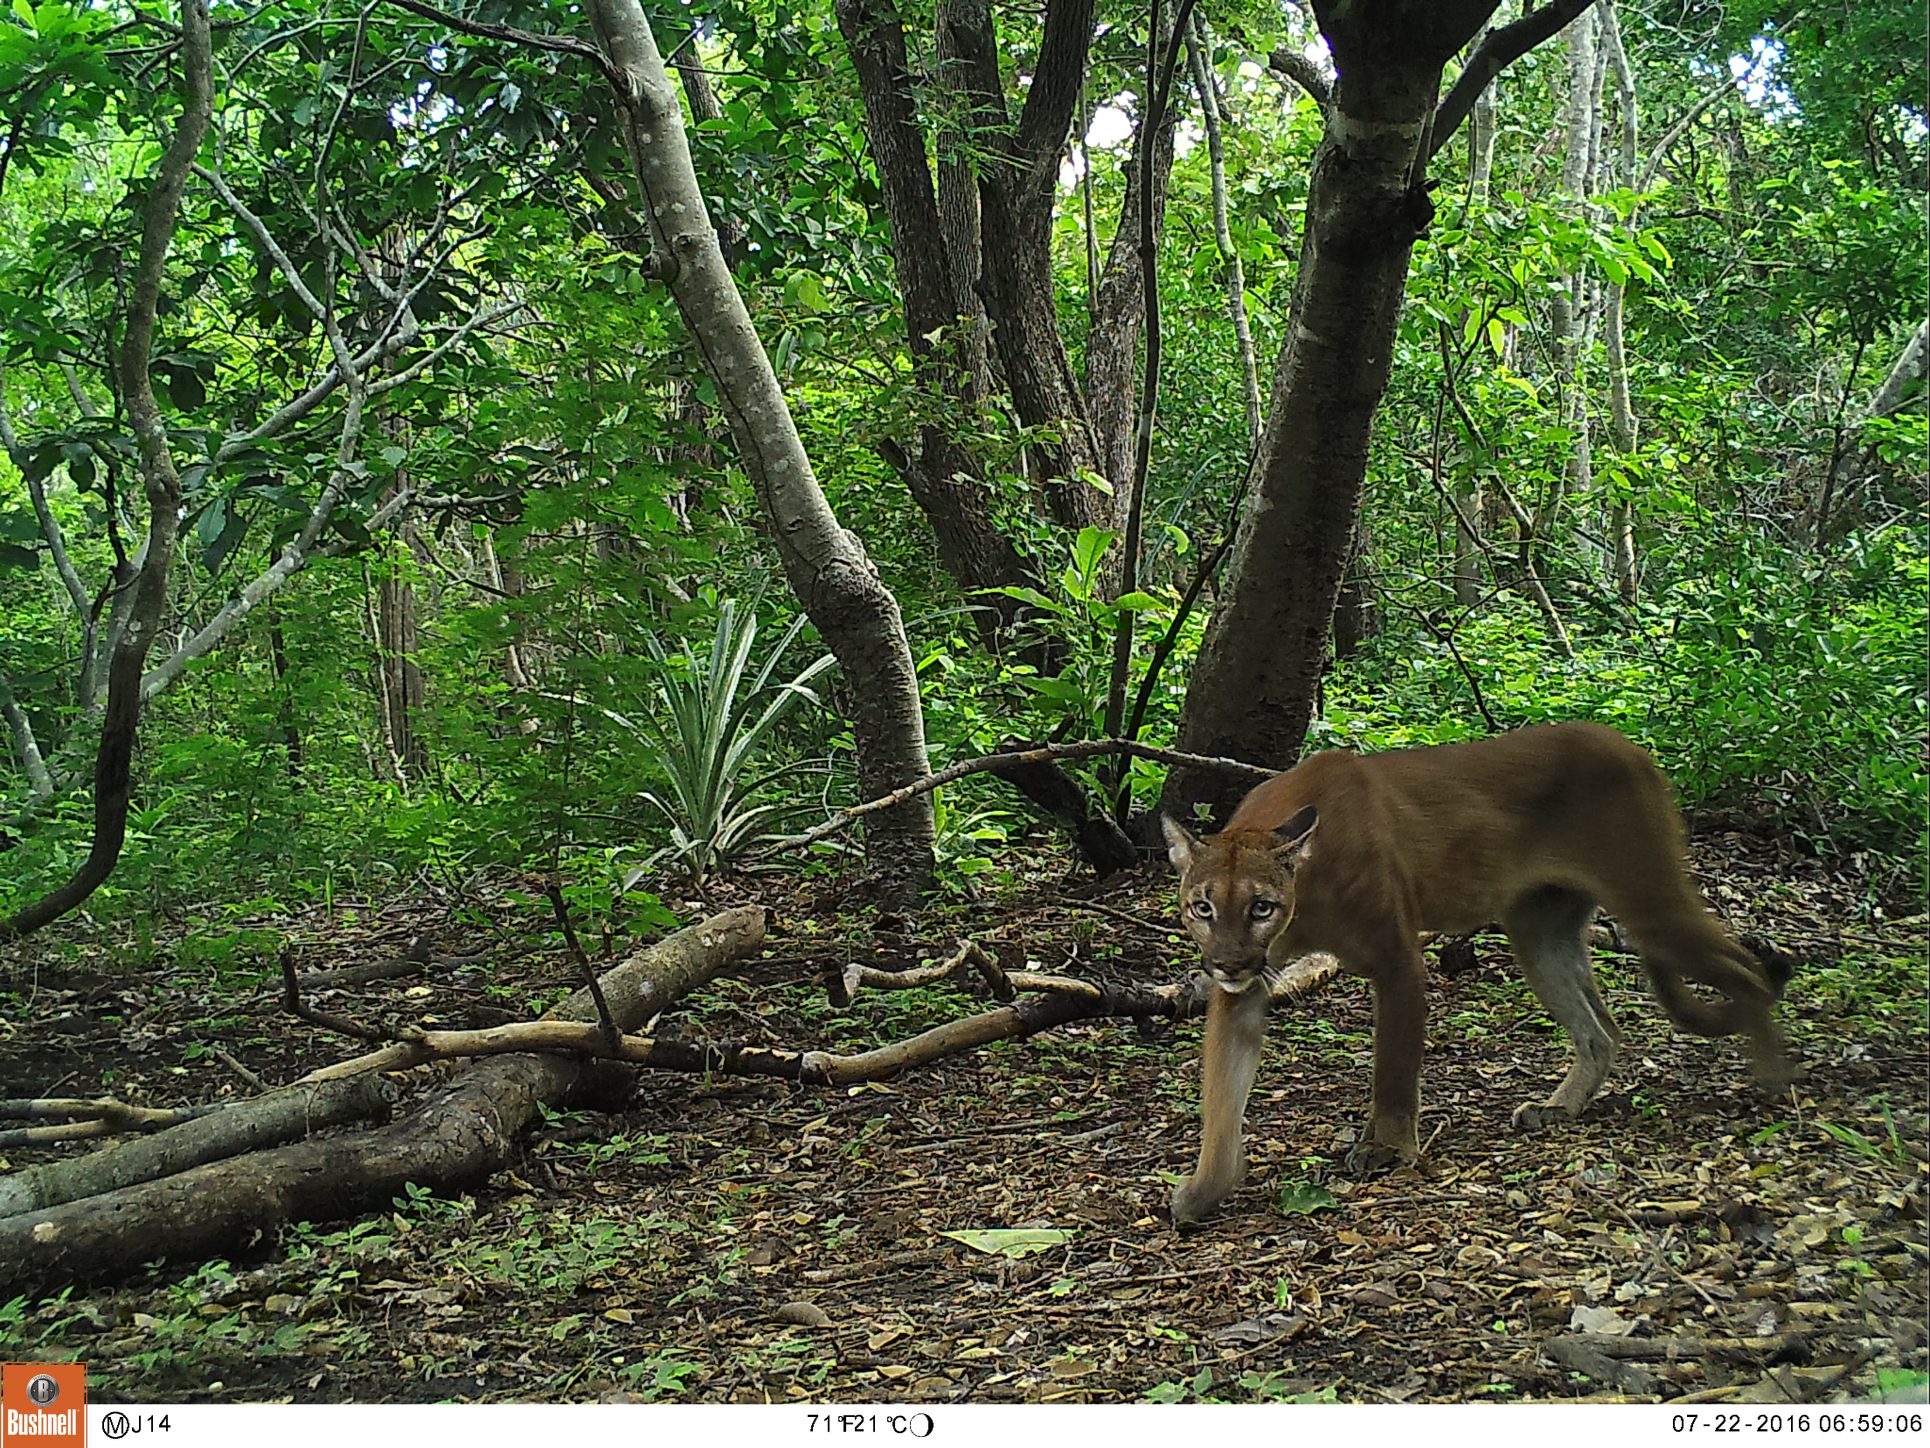 Altos costos dificultan investigación de felinos silvestres en Costa Rica